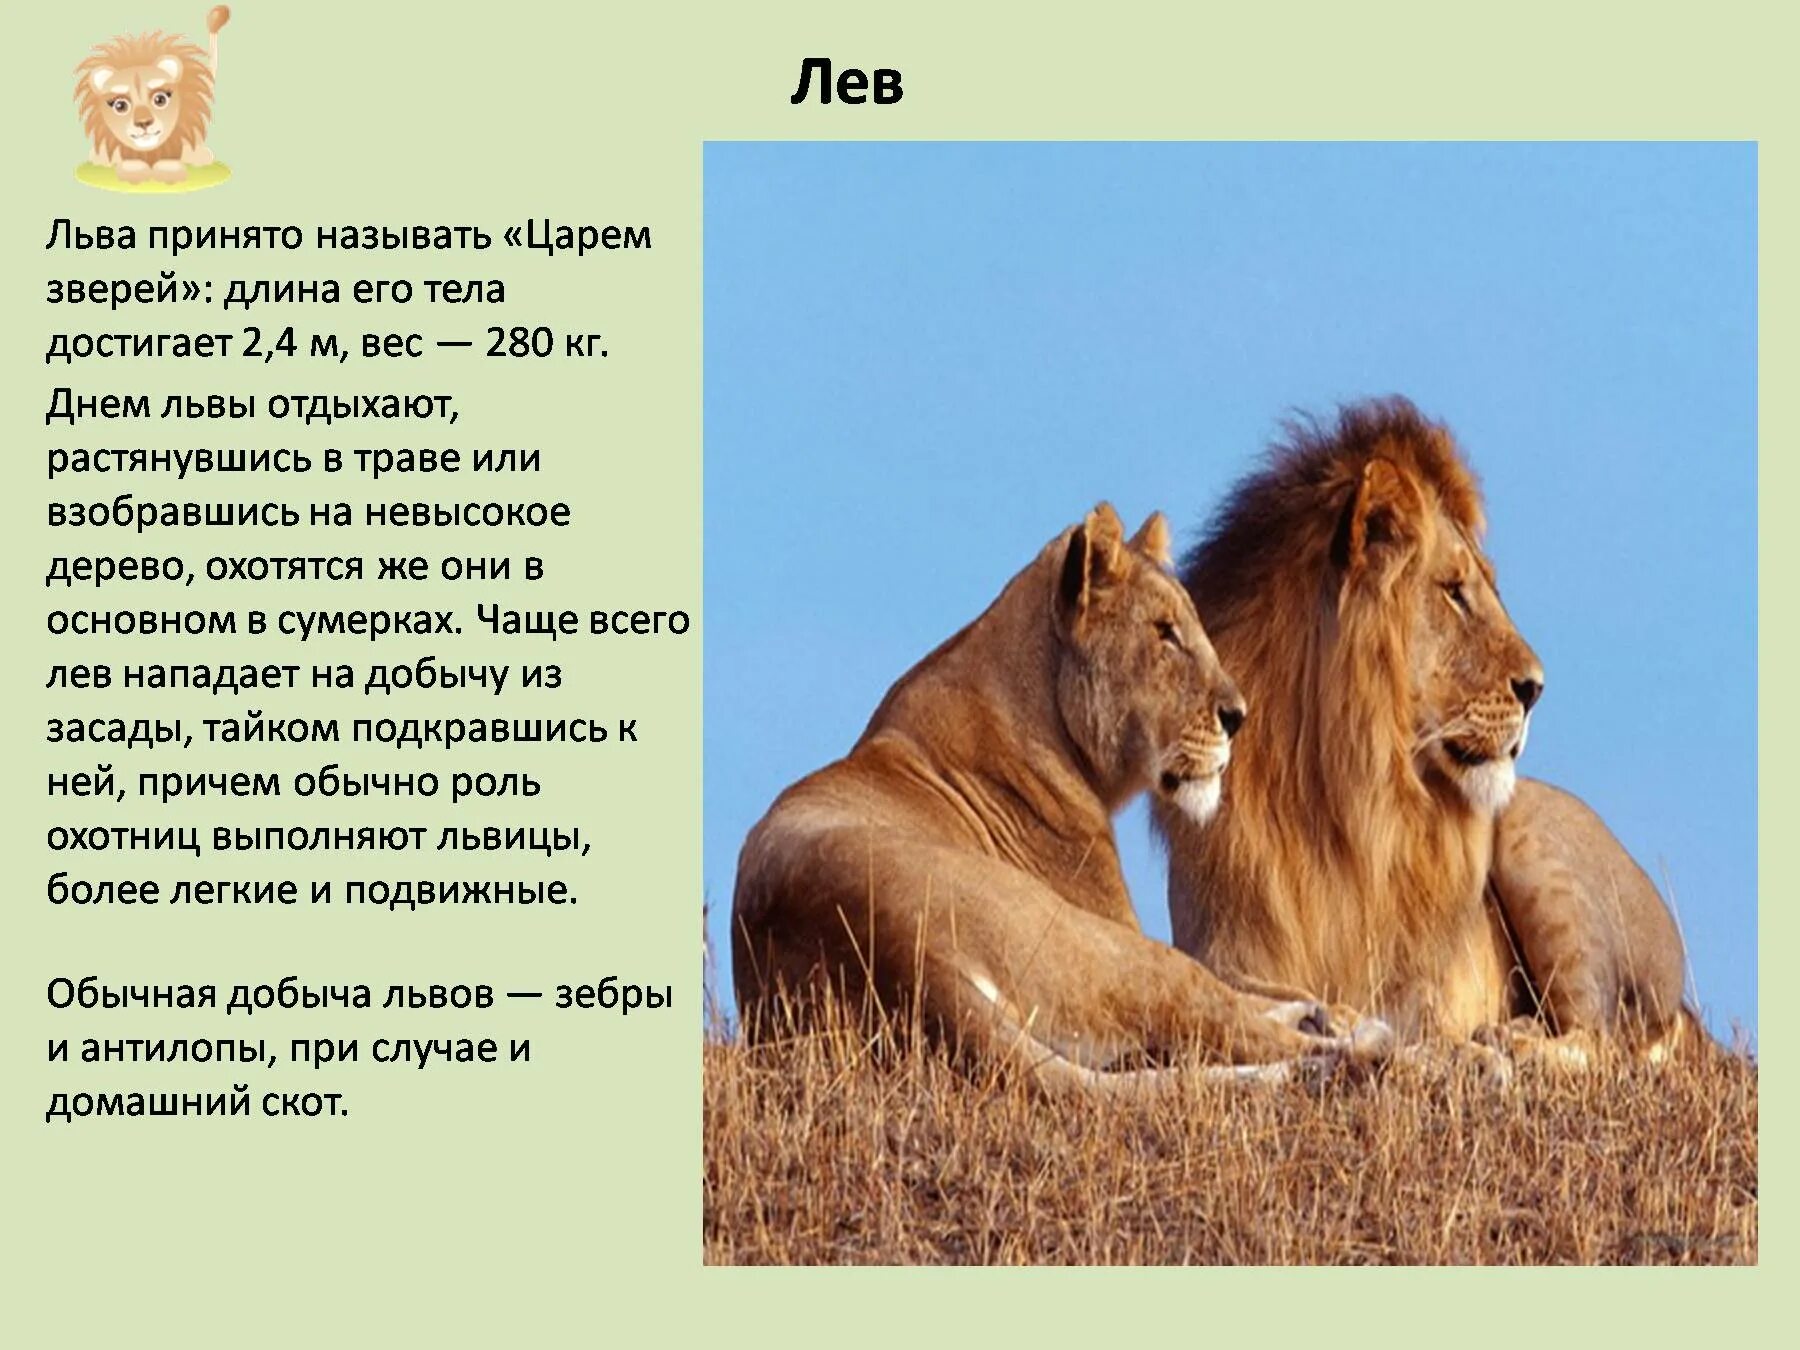 Рассказ про обитателя. Доклад о животных. Описание Льва. Рассказ про Льва. Презентация про животных.